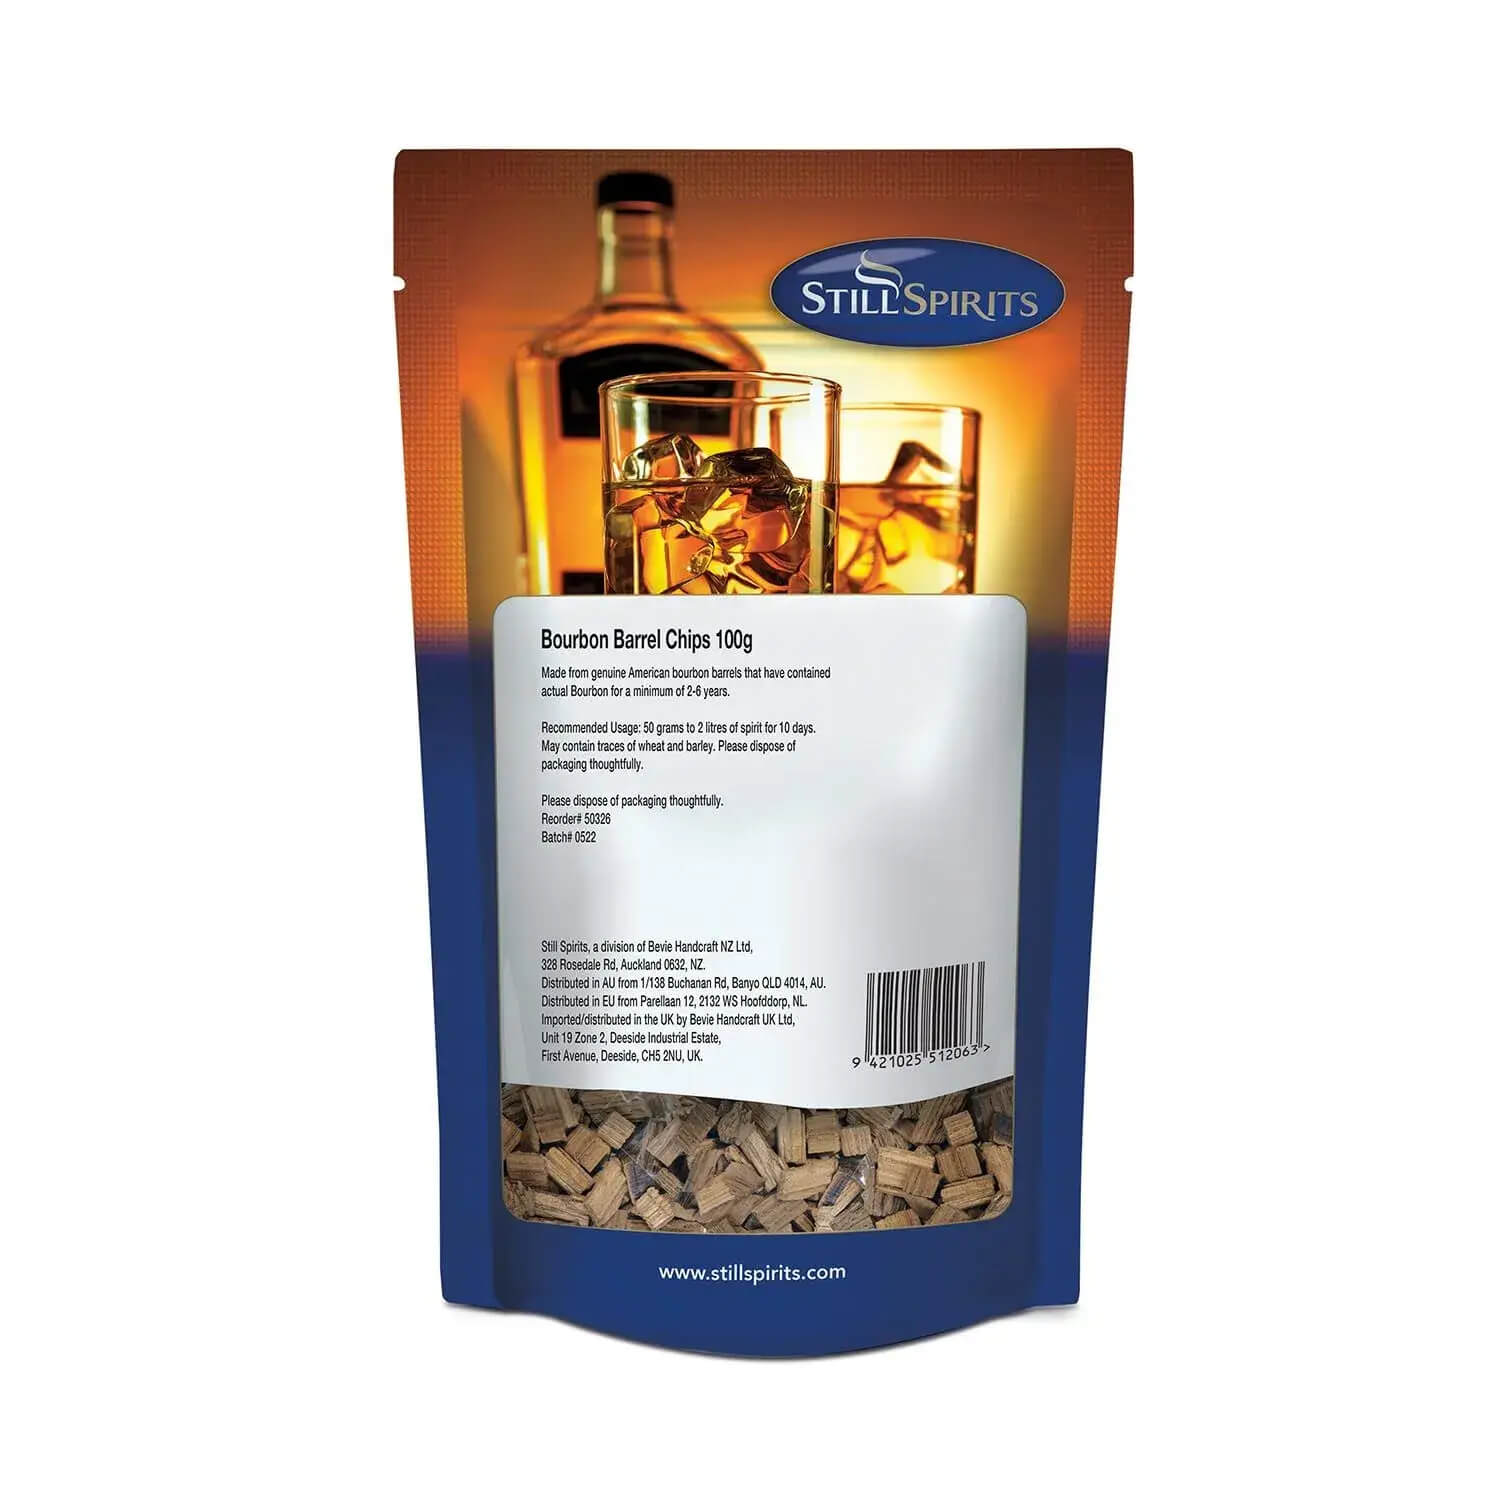 Still Spirits Bourbon Barrel Chips 100g - All Things Fermented | Home Brew Shop NZ | Supplies | Equipment